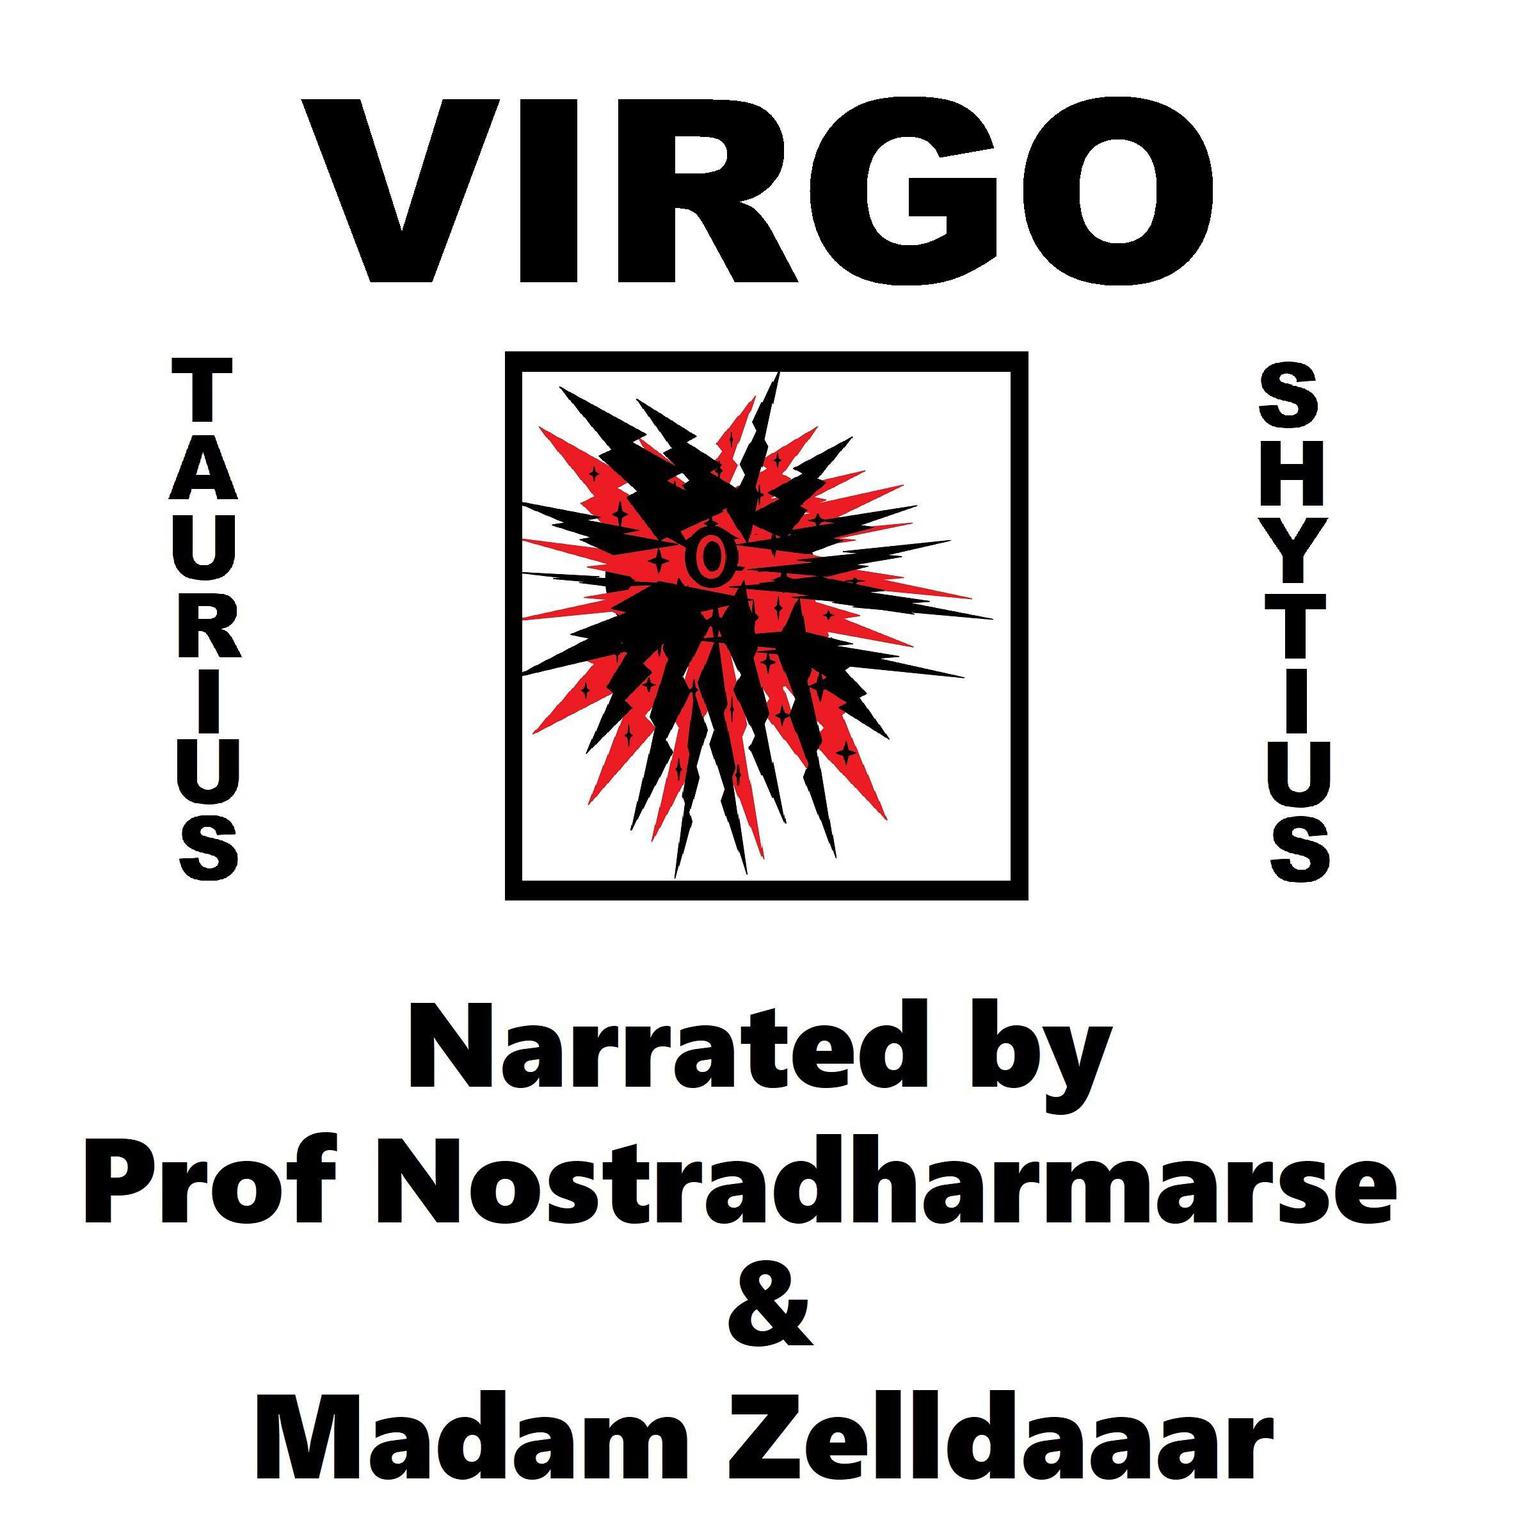 Virgo Audiobook, by Taurius Shytius